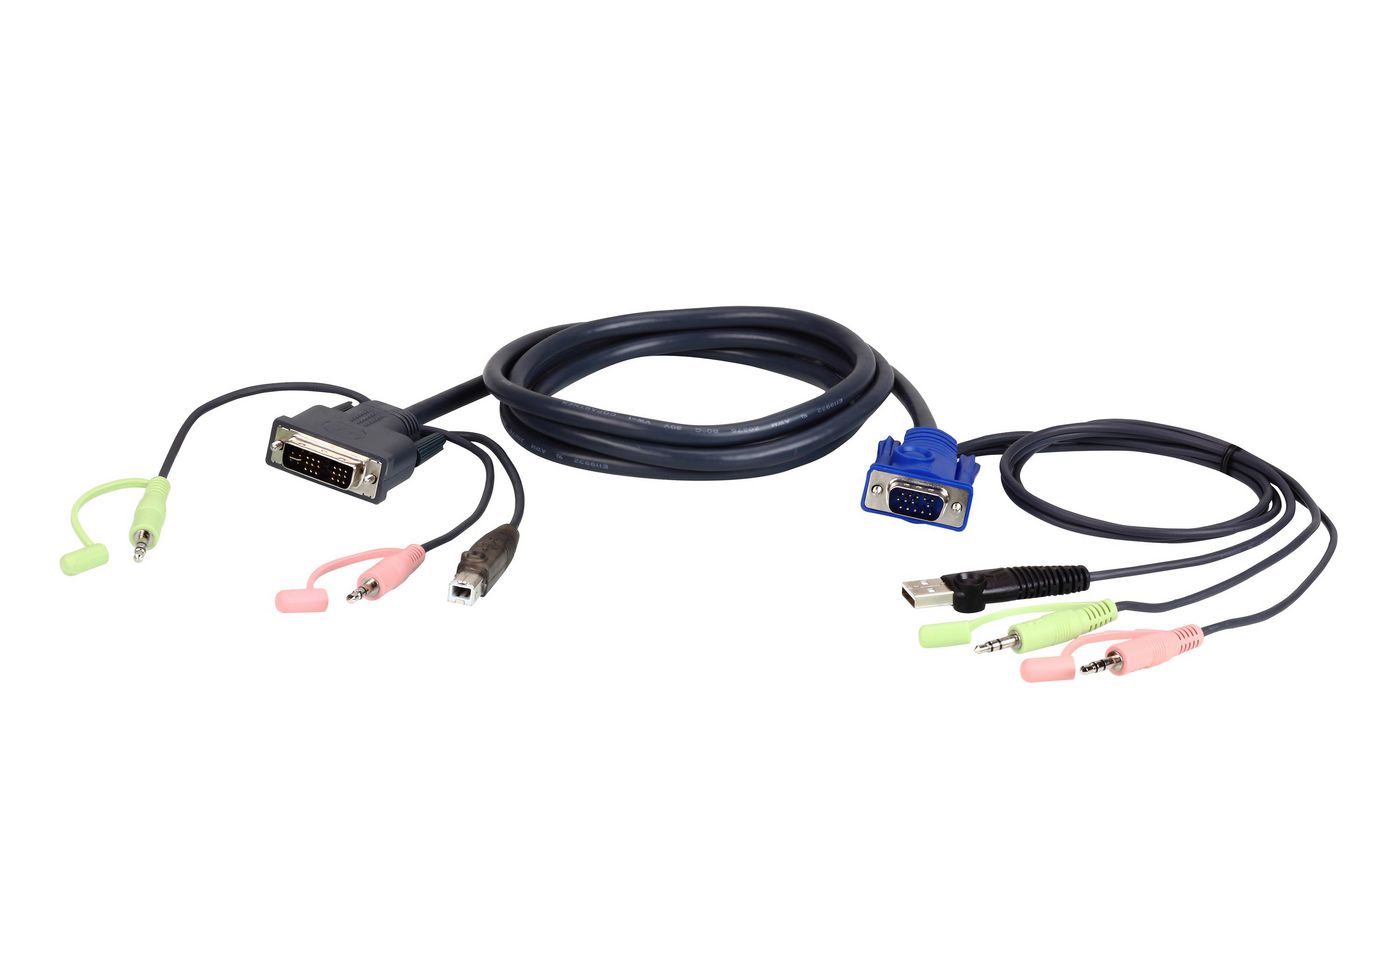 ATEN 2L-7DX2U VGA USB zu DVI KVM Cable - 1,8m (2L-7DX2U)